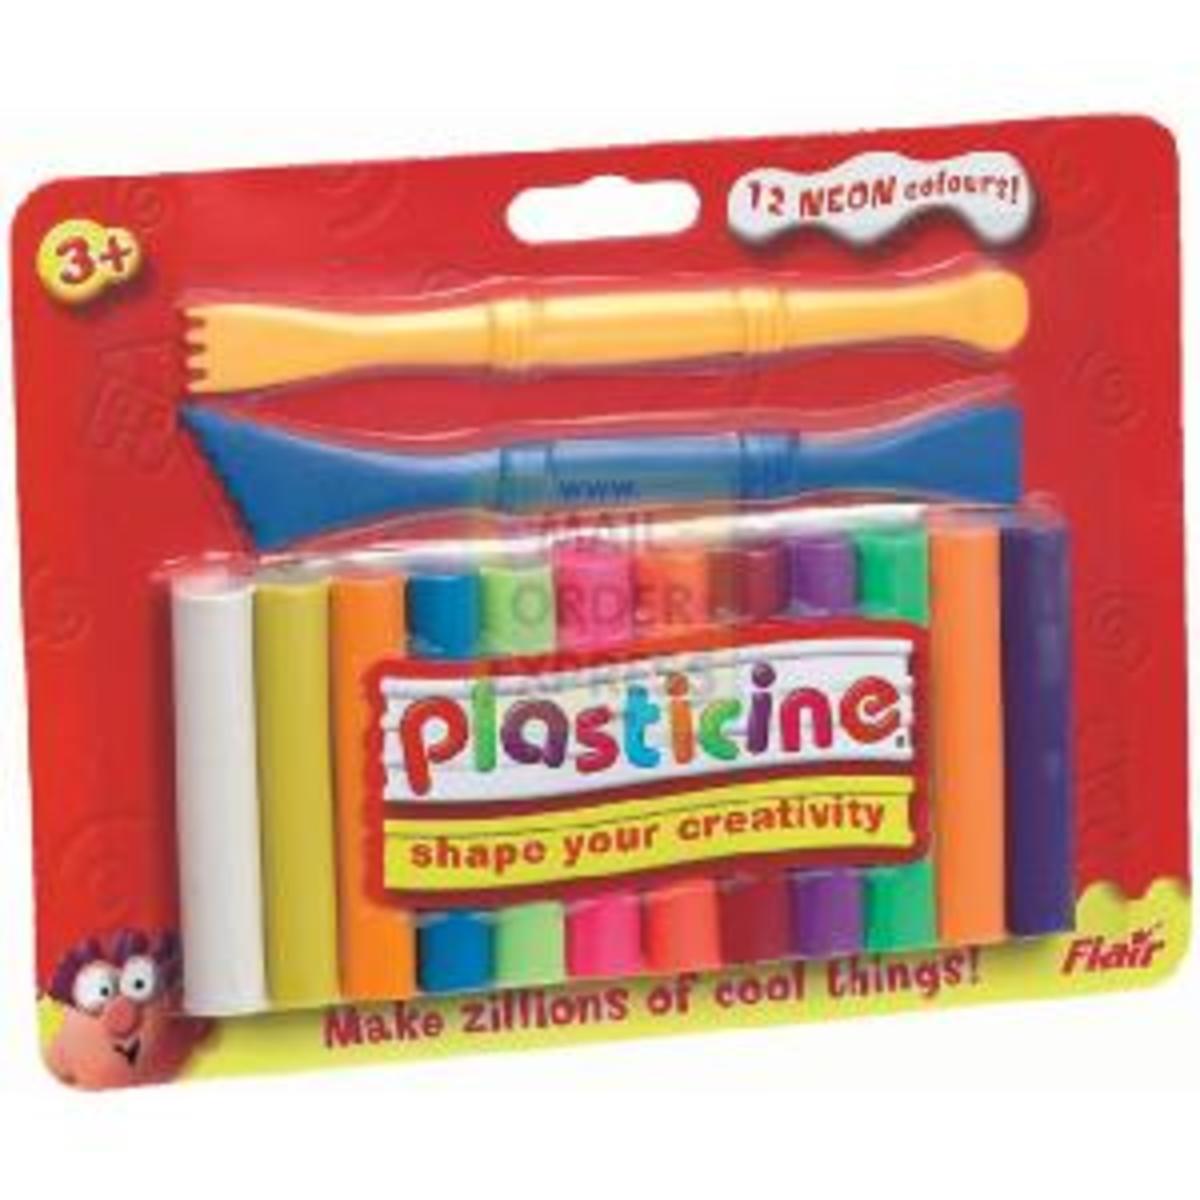 Plasticine